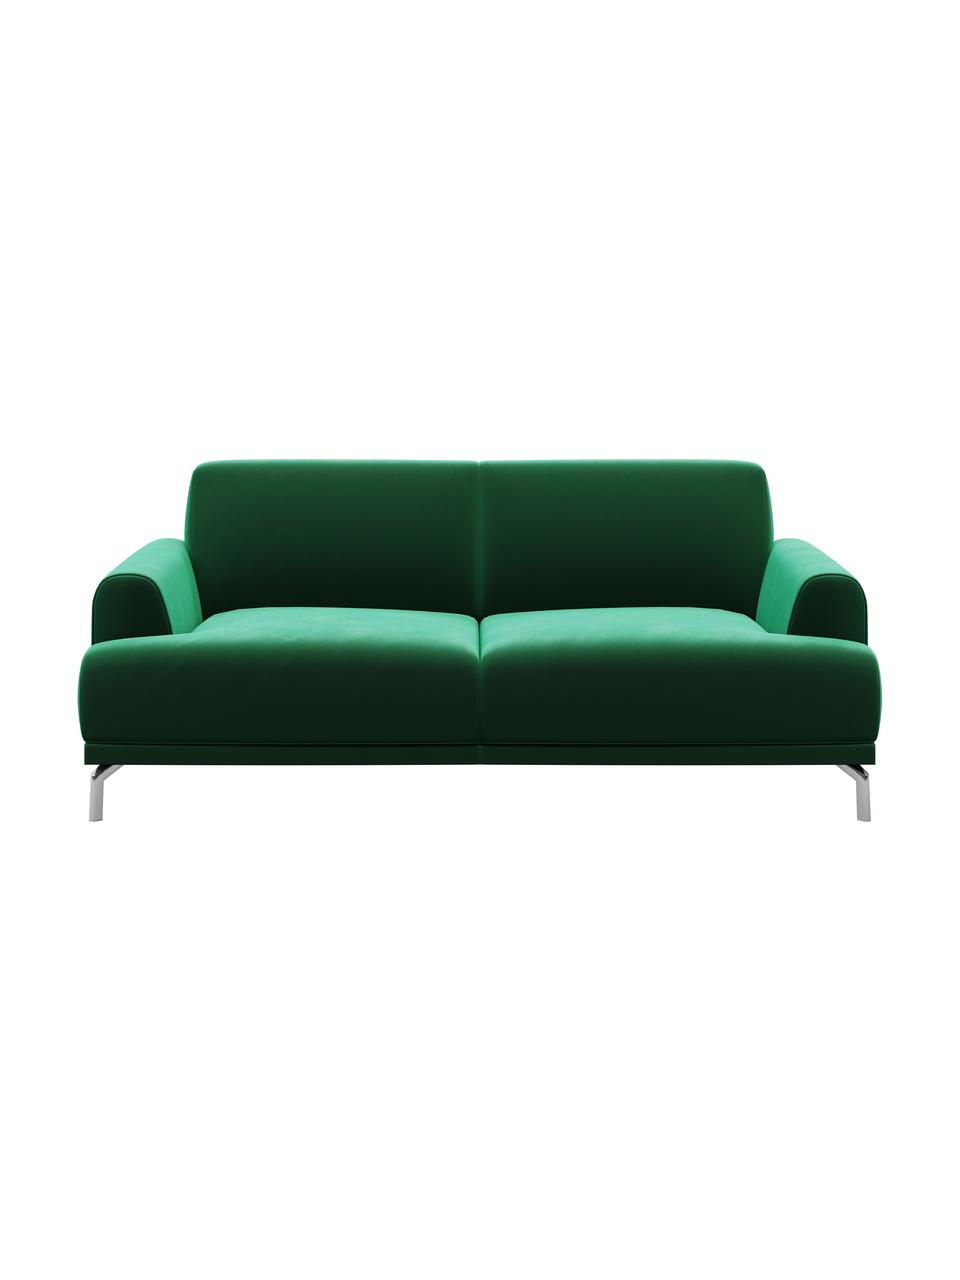 Sofa z aksamitu Puzo (2-osobowa), Tapicerka: 100% aksamit poliestrowy,, Nogi: metal lakierowany, Ciemnozielony, S 170 x G 84 cm